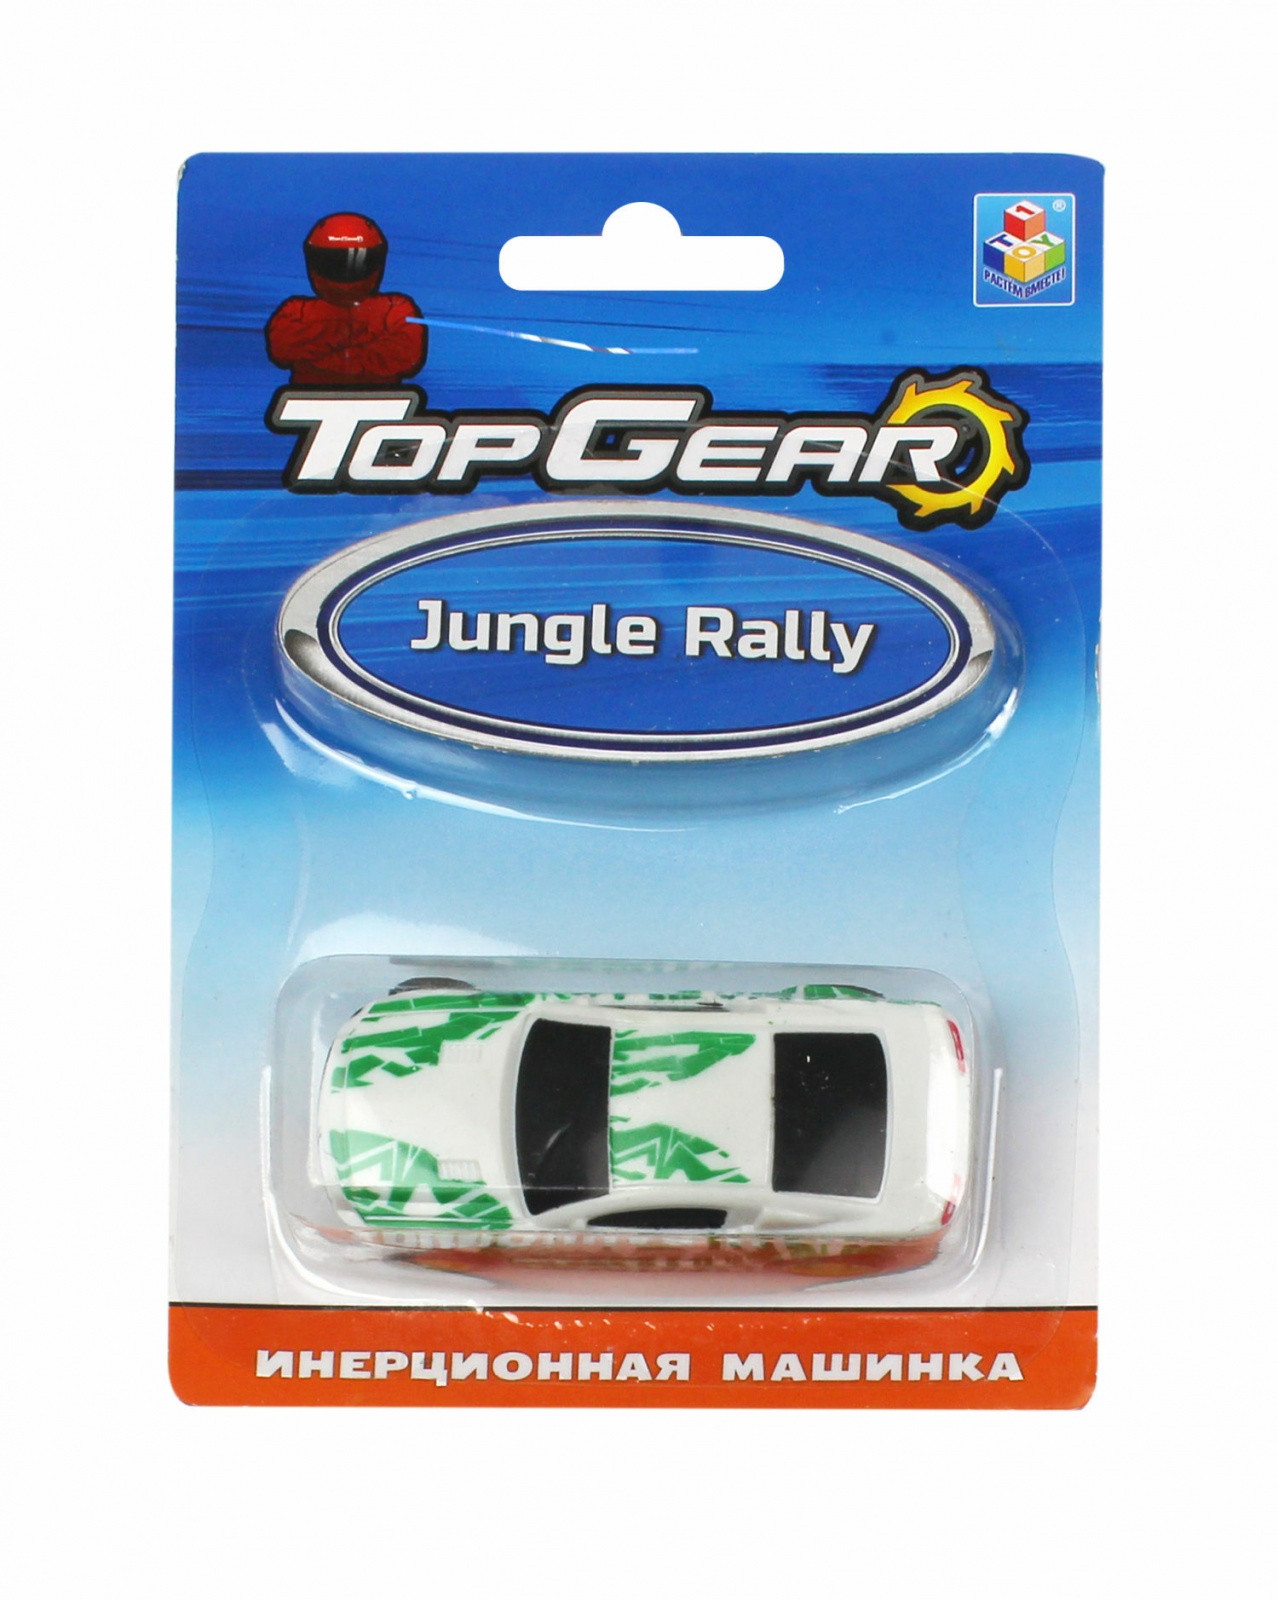 Инерционный спортивный автомобиль Top Gear - Jungle Rally  